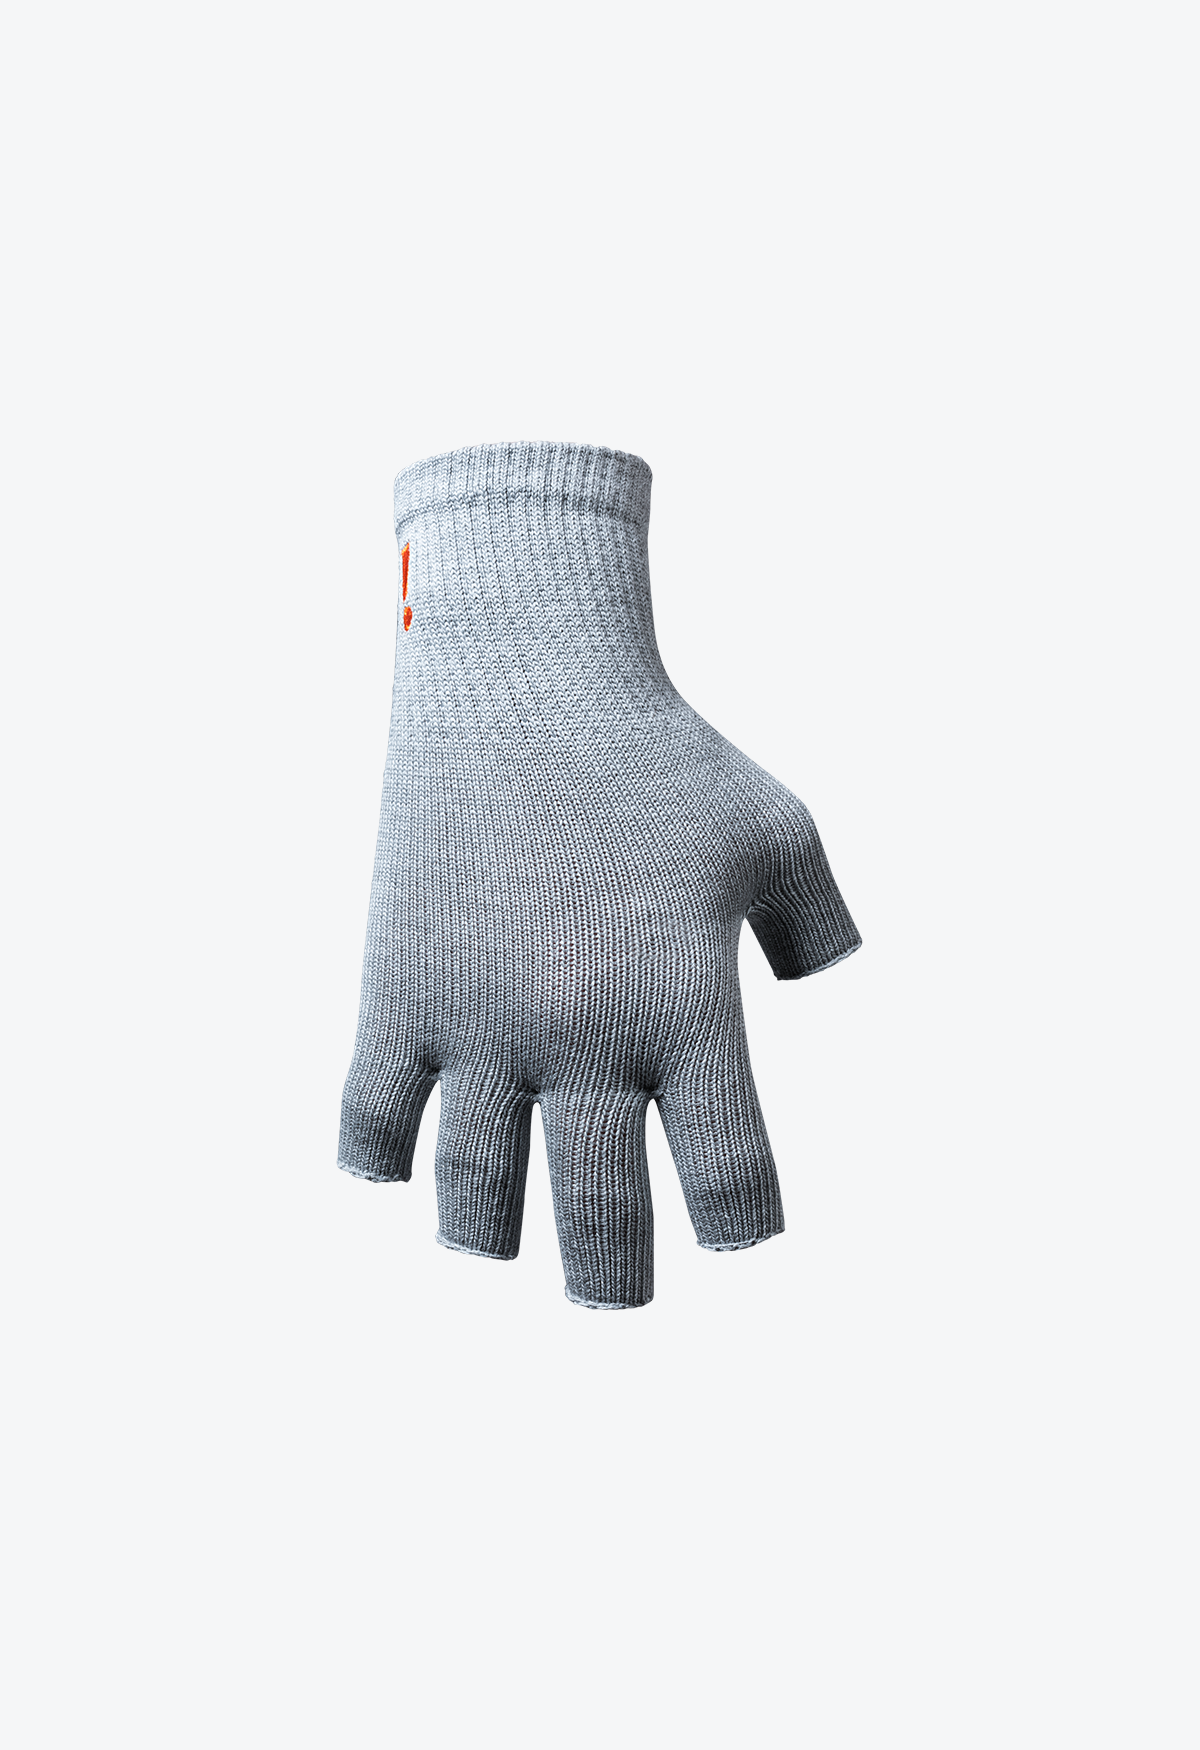 Incrediwear Fingerless Circulation Gloves